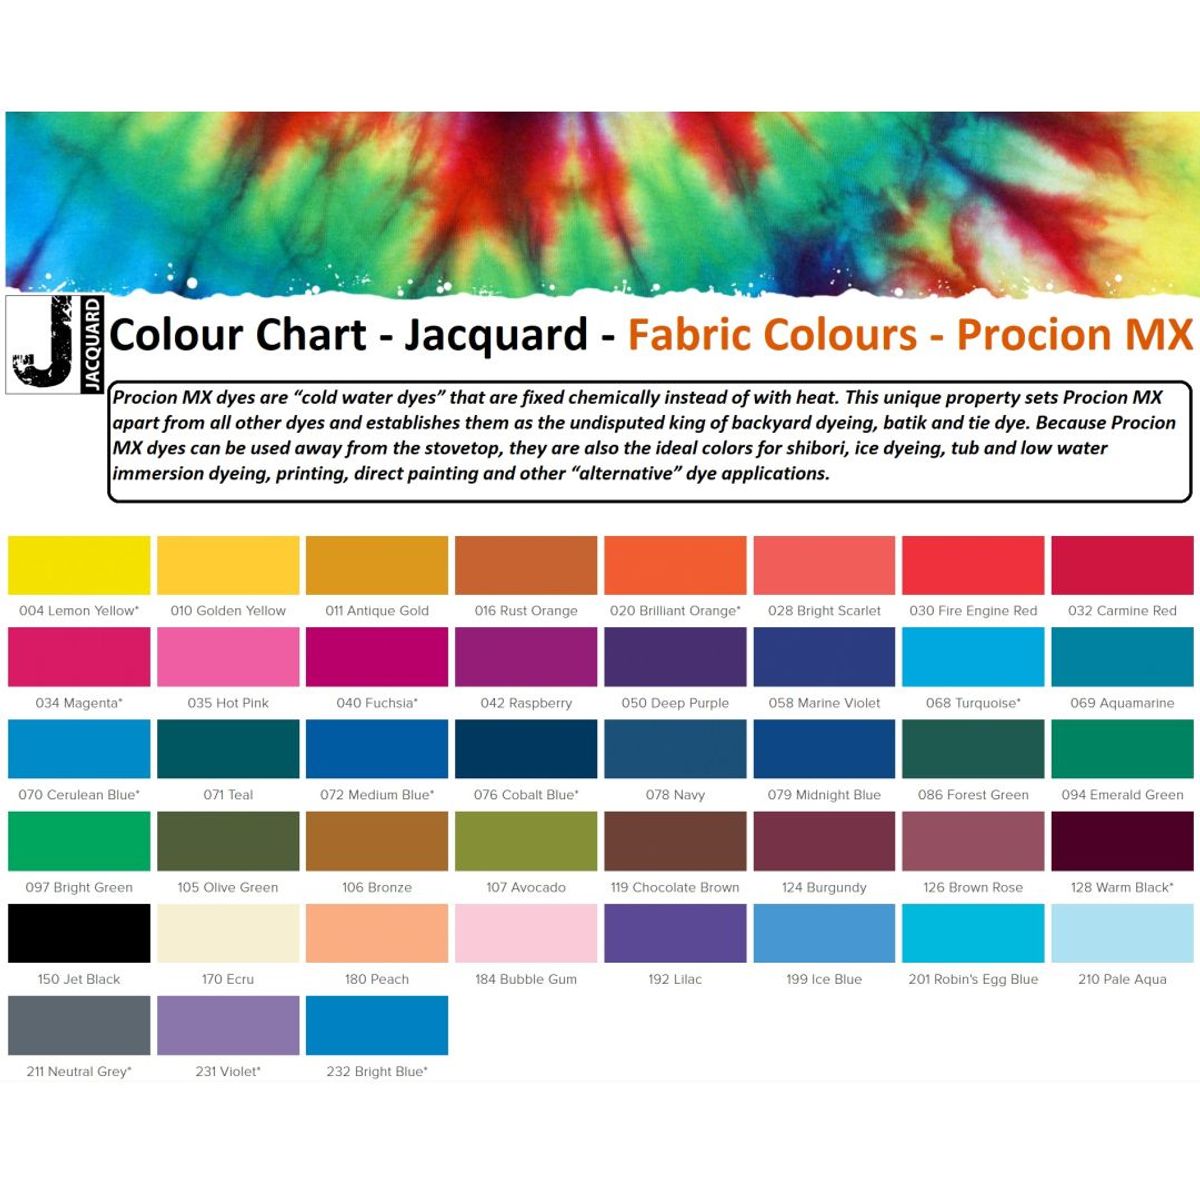 Jacquard - Procion MX Dye - Fabric Textile - Ecru 170